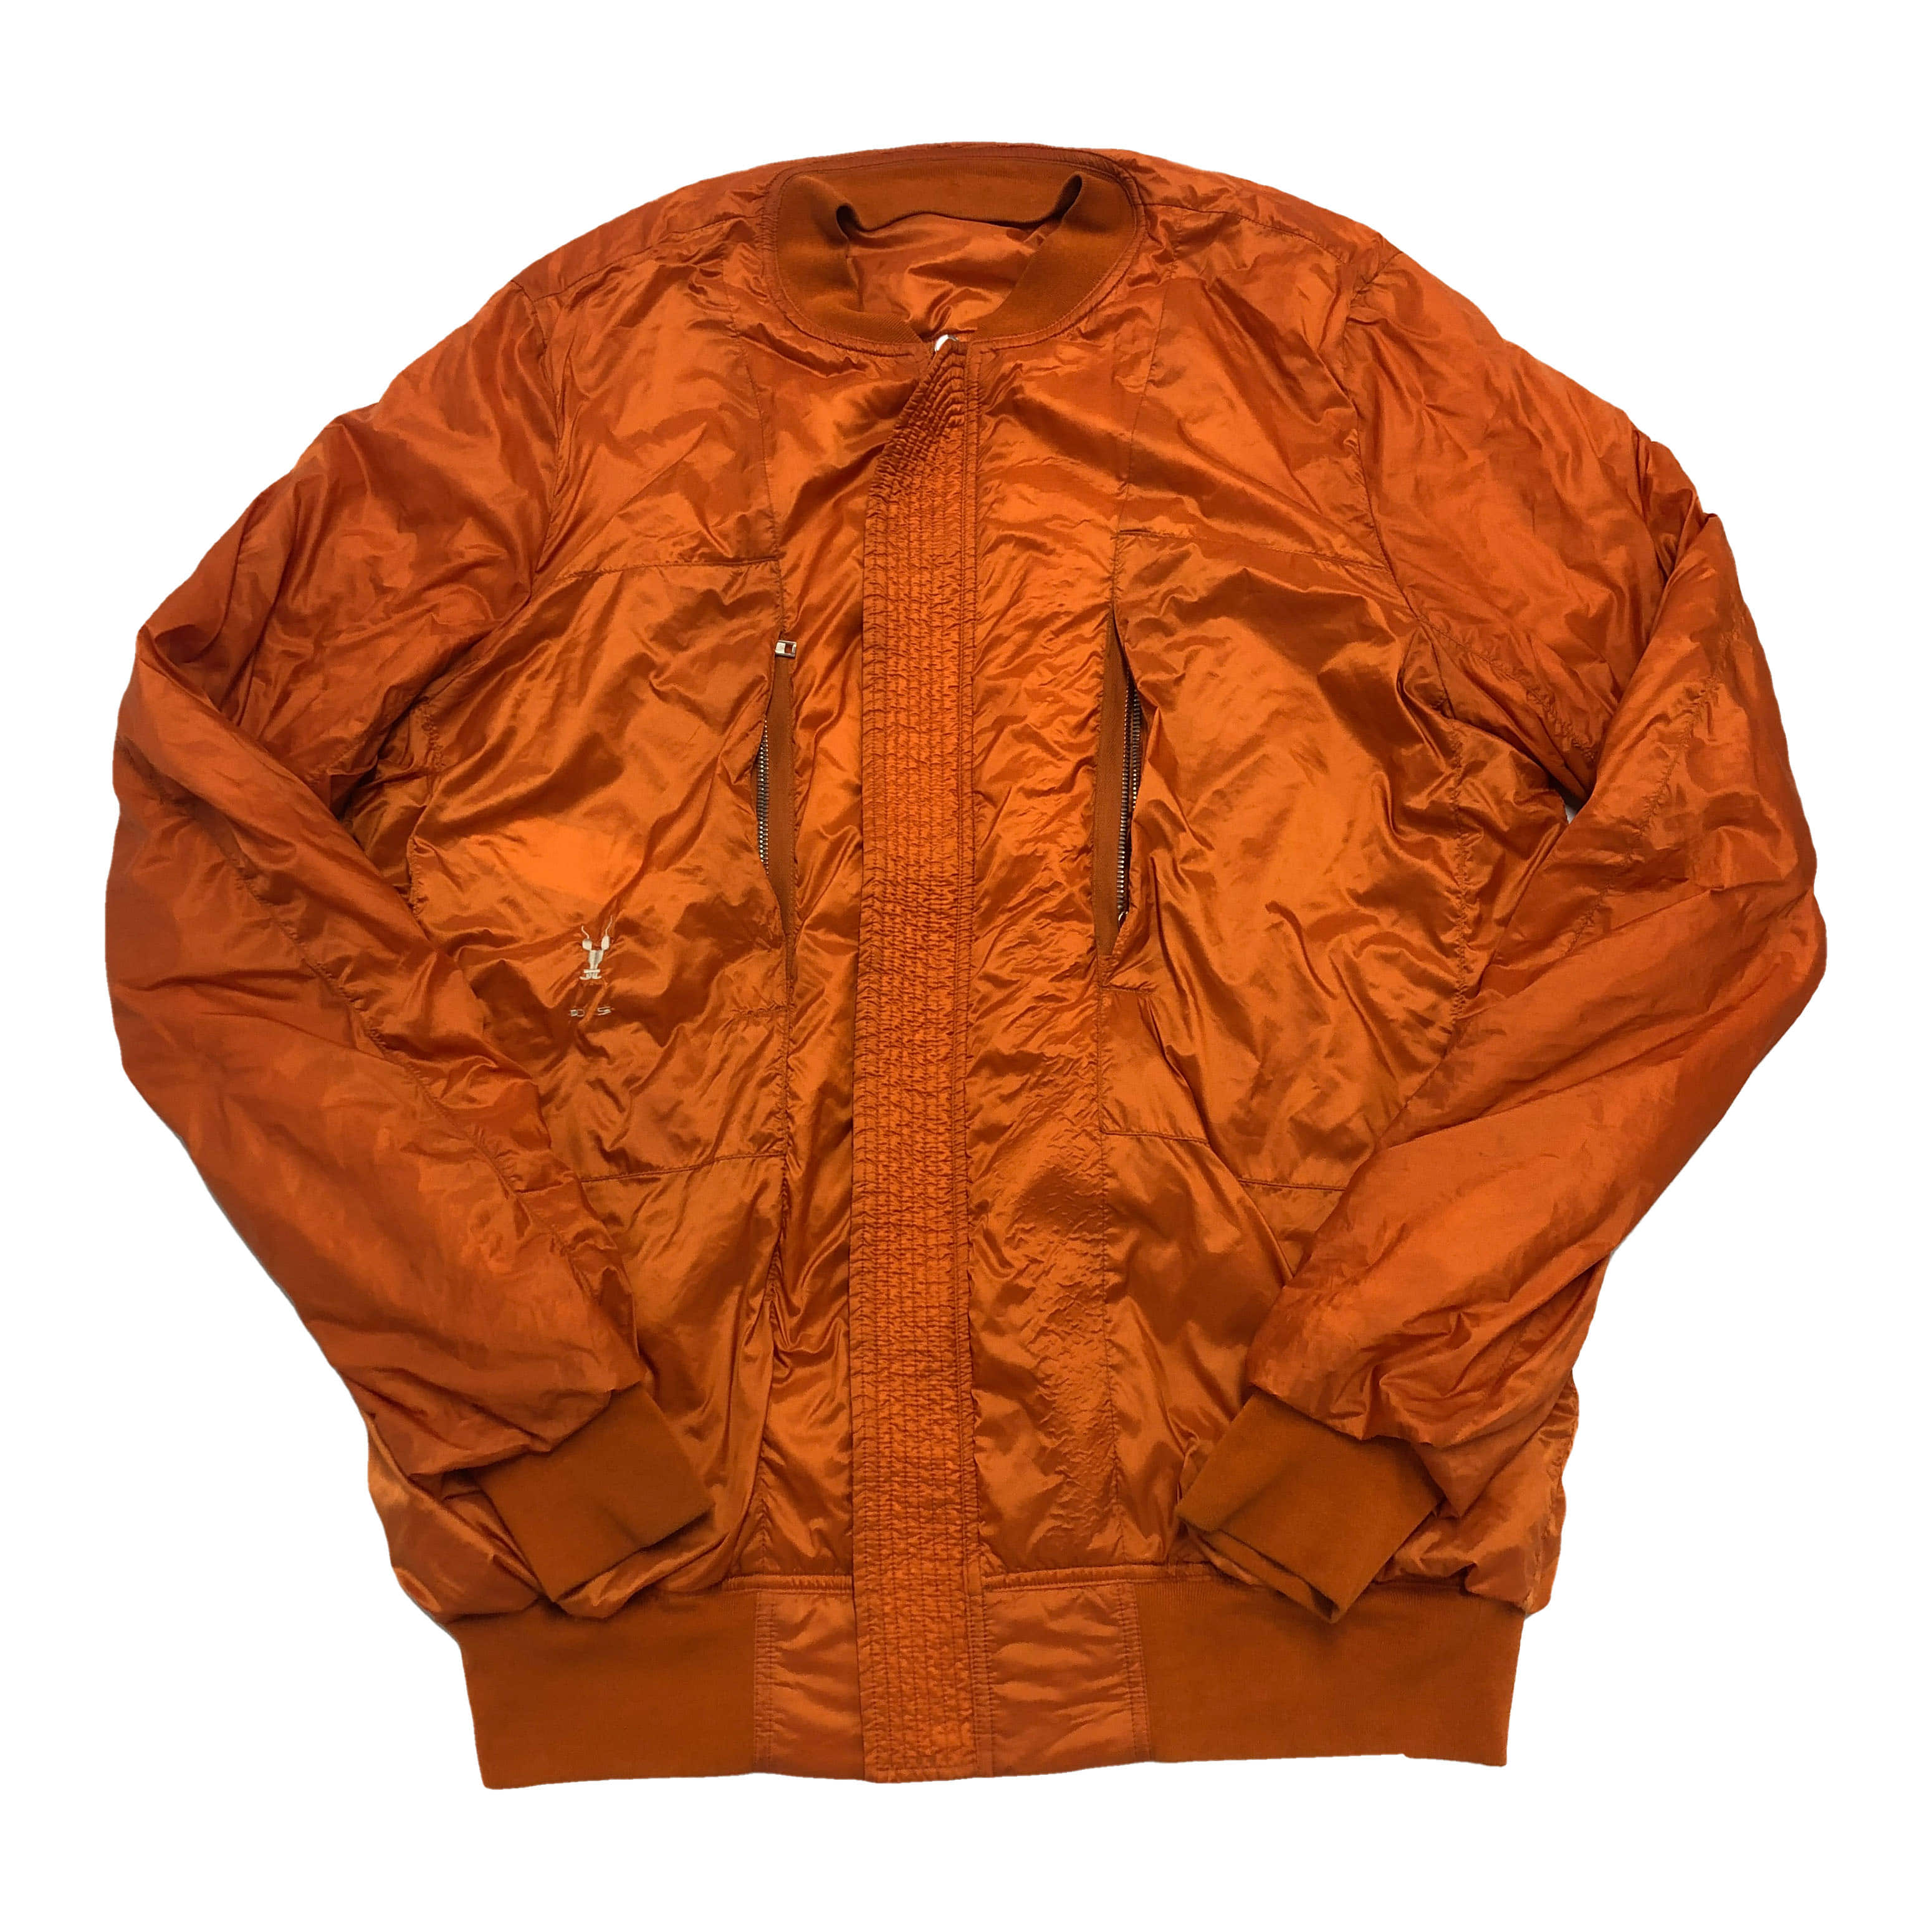 [Rick Owens] Orange Windbreaker Reversible Jacket - Size XL